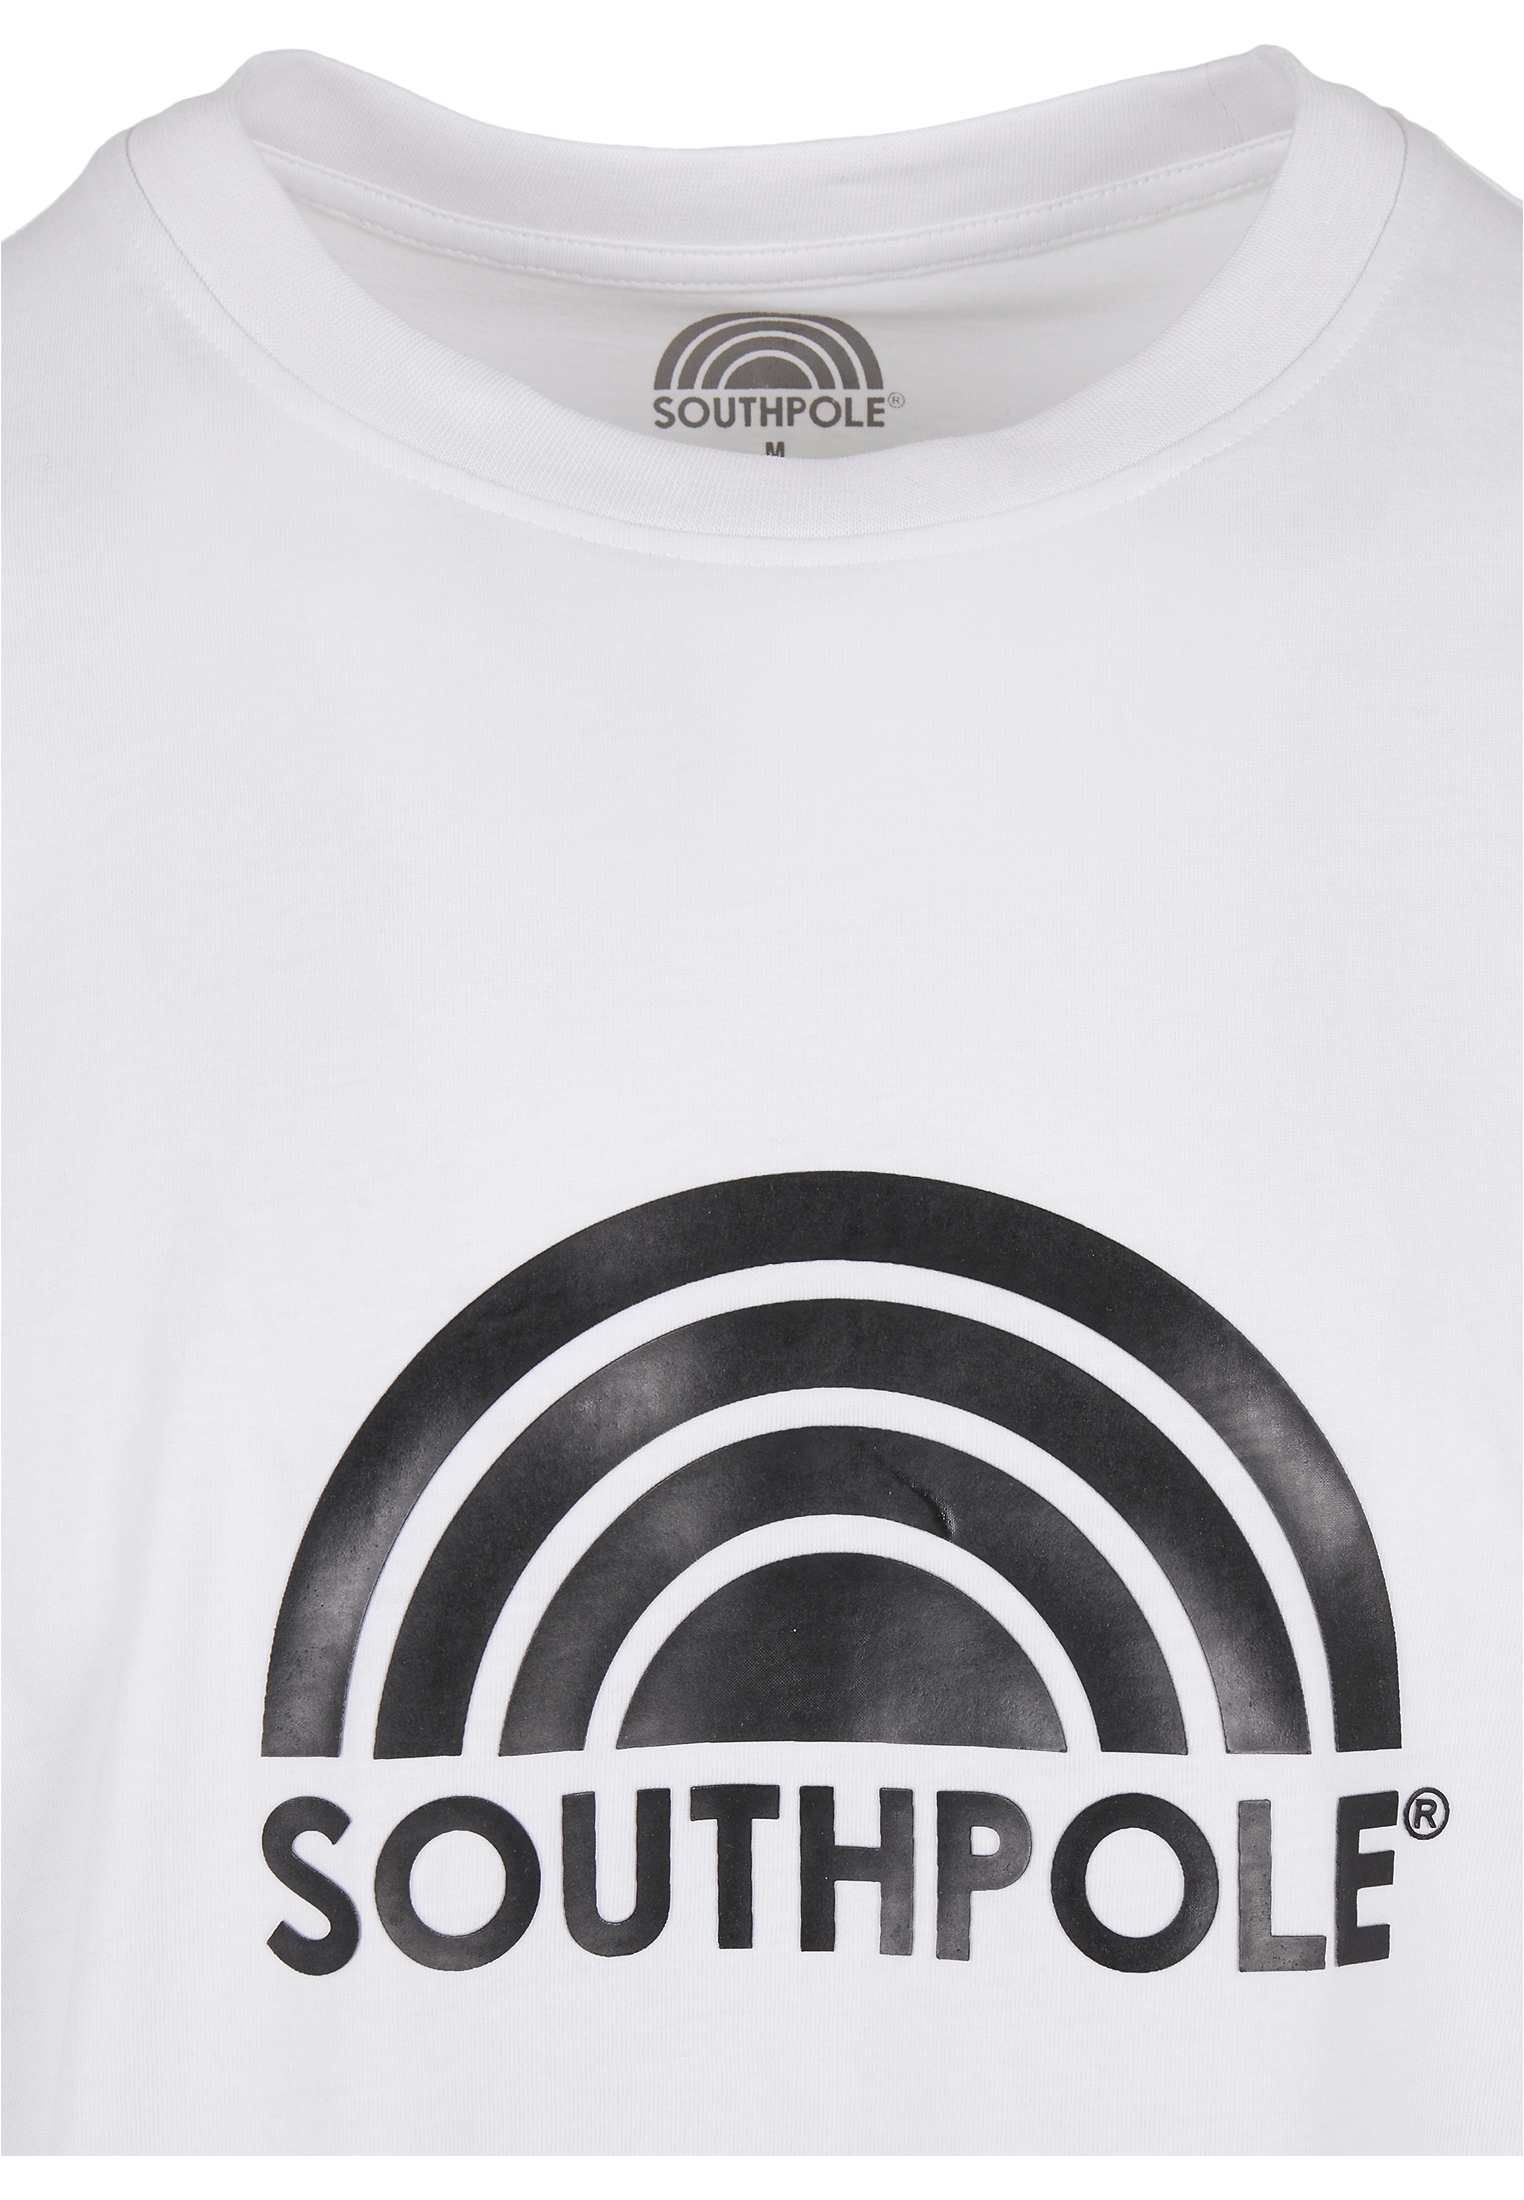 Nos Kollektion Southpole Logo Tee in Farbe white